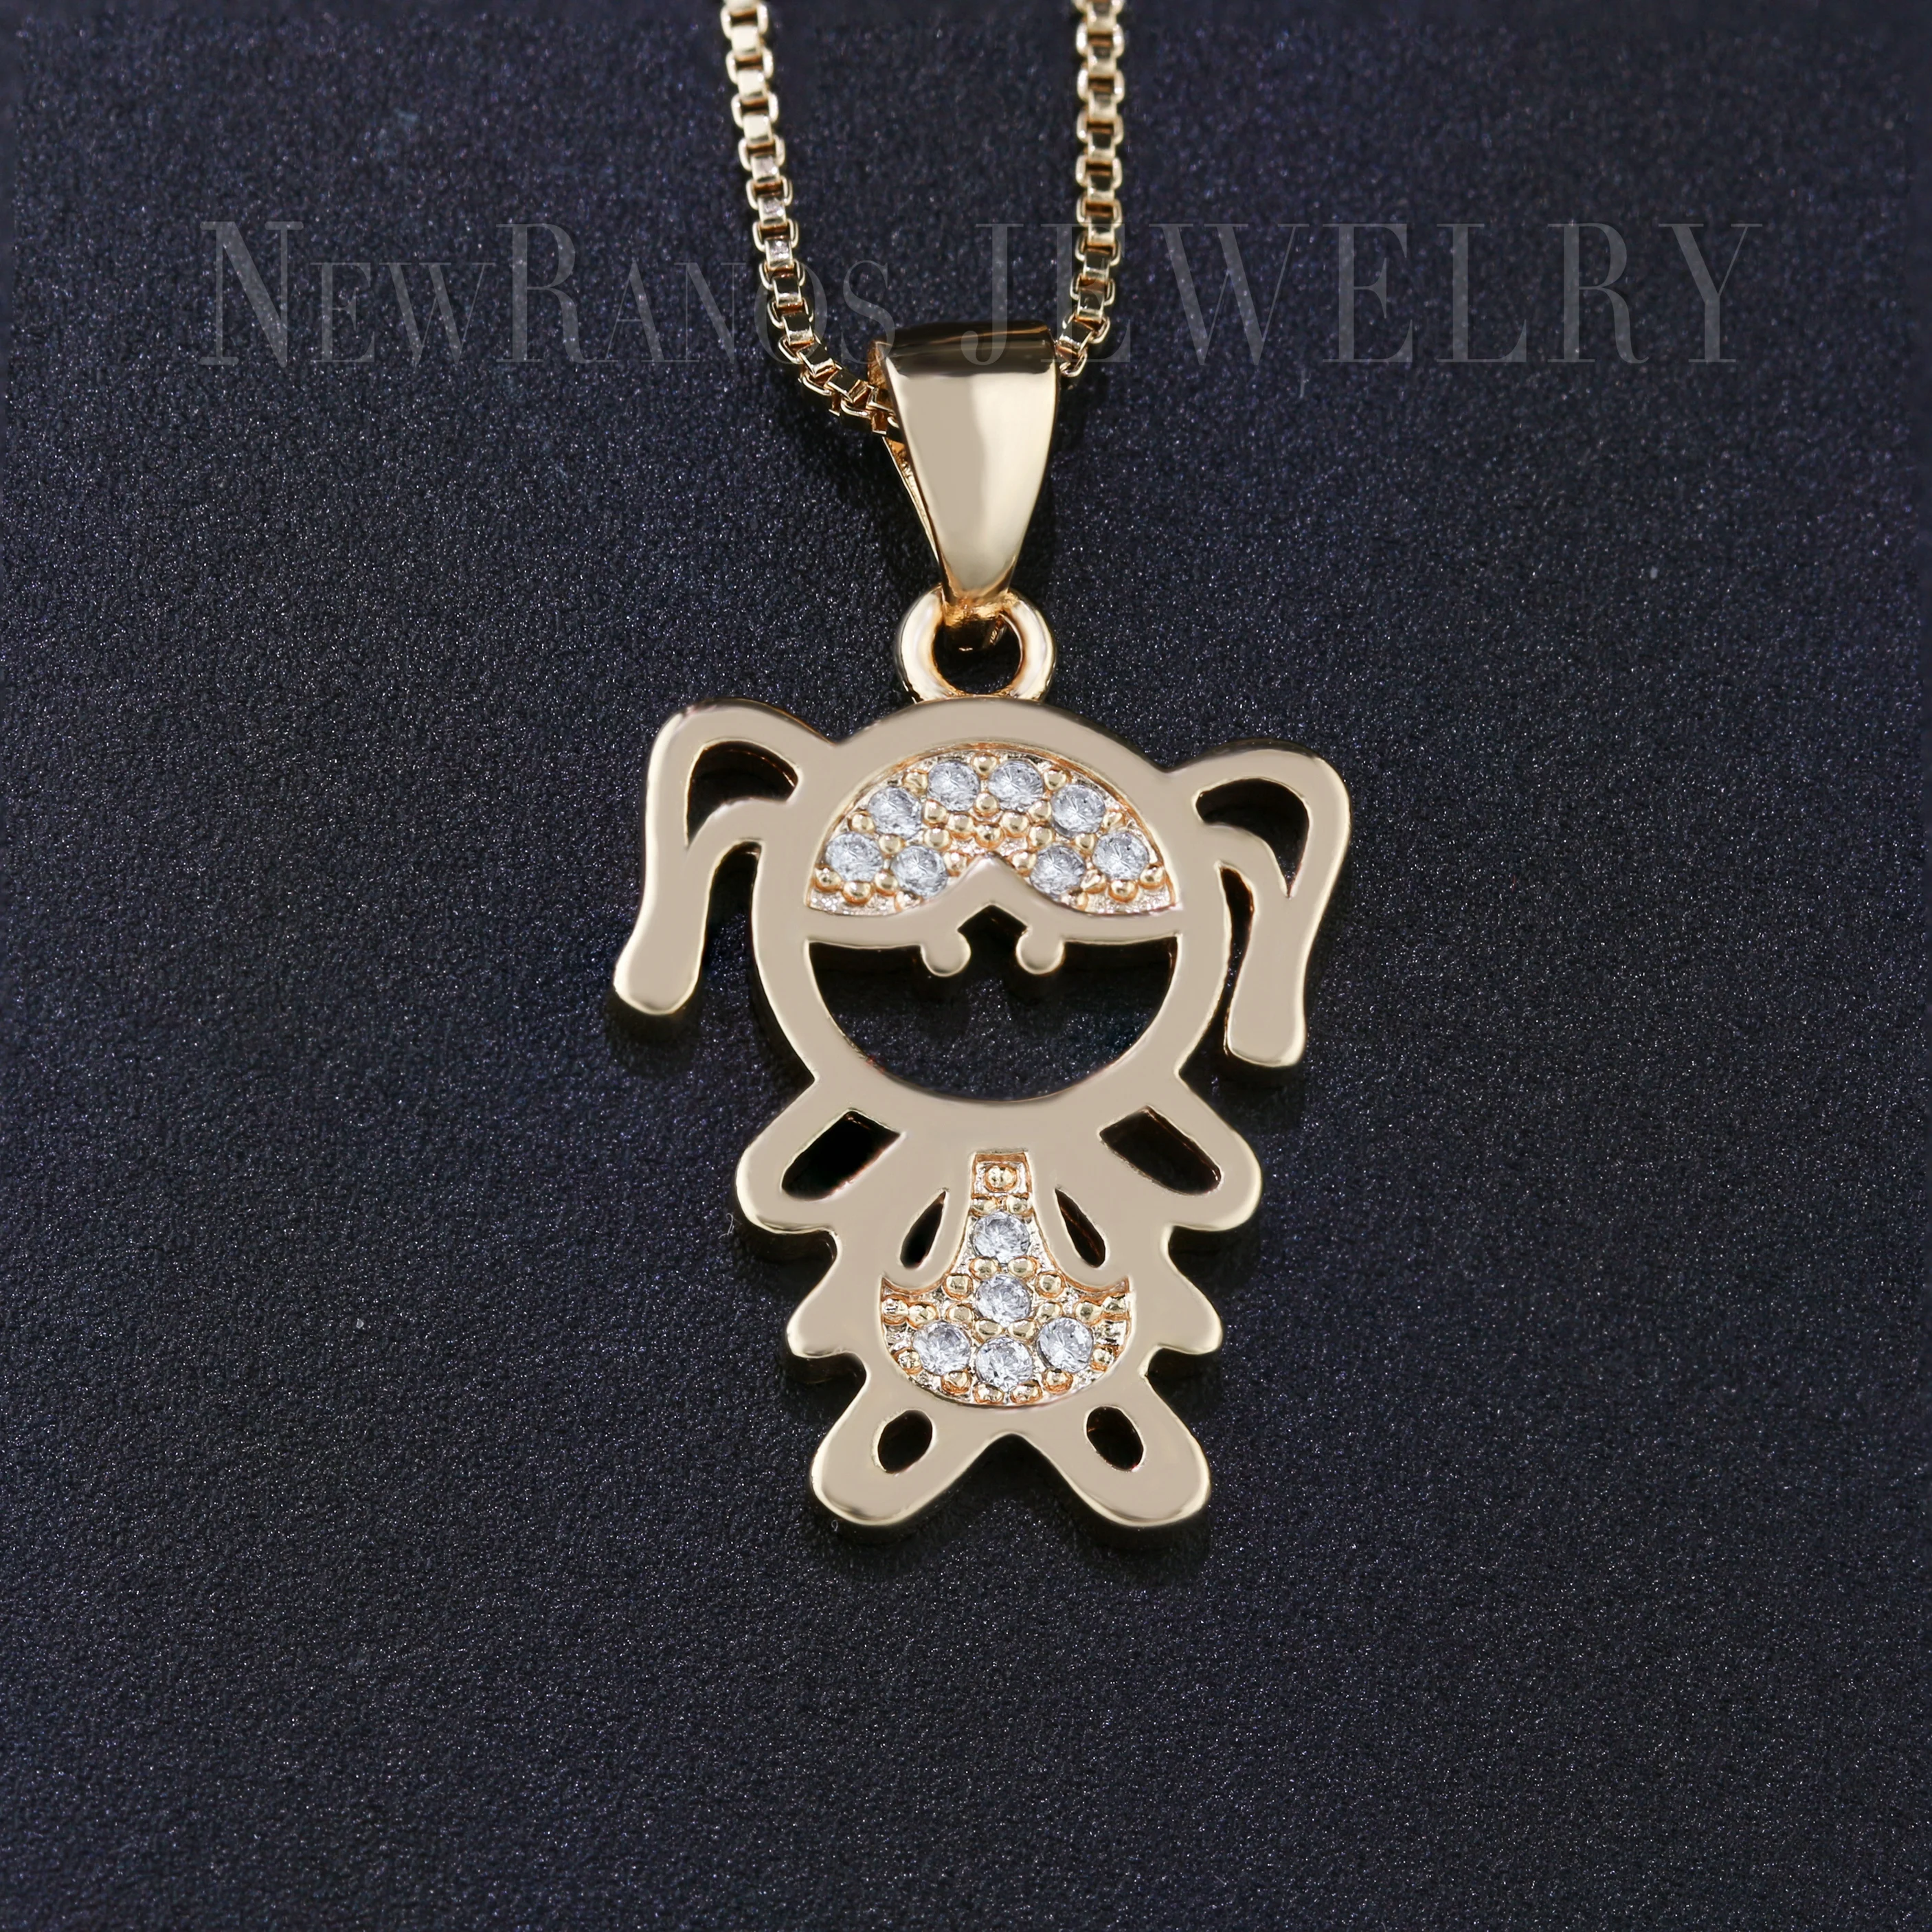 Newranos Очаровательное ожерелье с кулоном для мальчиков и девочек с кубическими цирконами, семейное ожерелье для мамы и папы для женщин, модное ювелирное изделие NQM007244